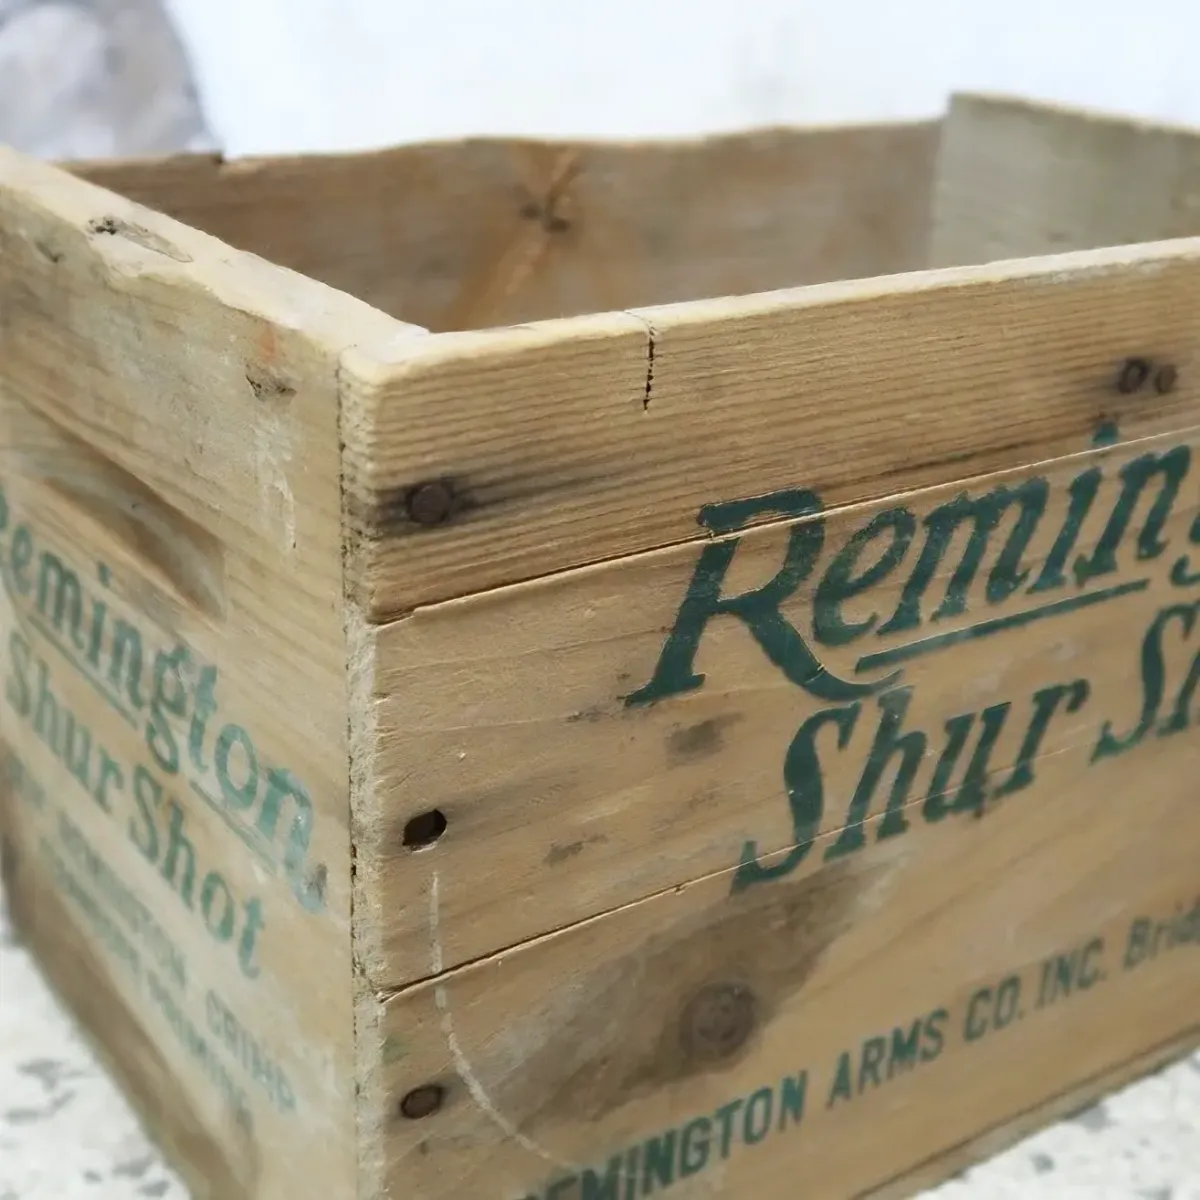 Remington ビンテージ 弾薬ウッドボックス